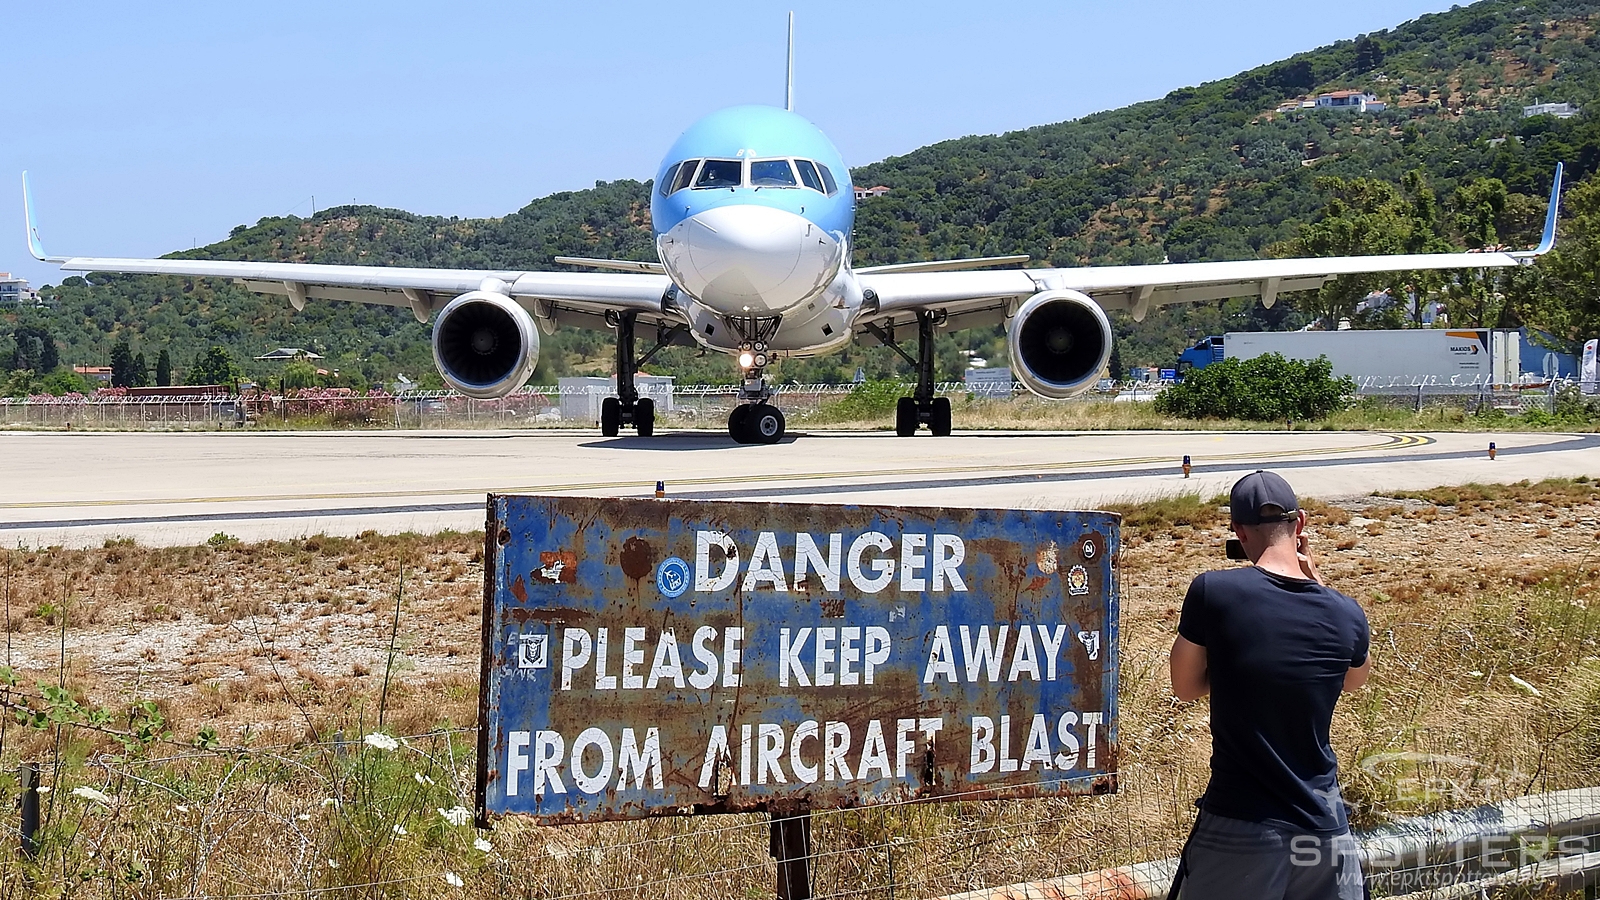 JSI - Airport - Spotting Location  () / Alexandros Papadiamantis - Skiathos Greece [LGSK/JSI]